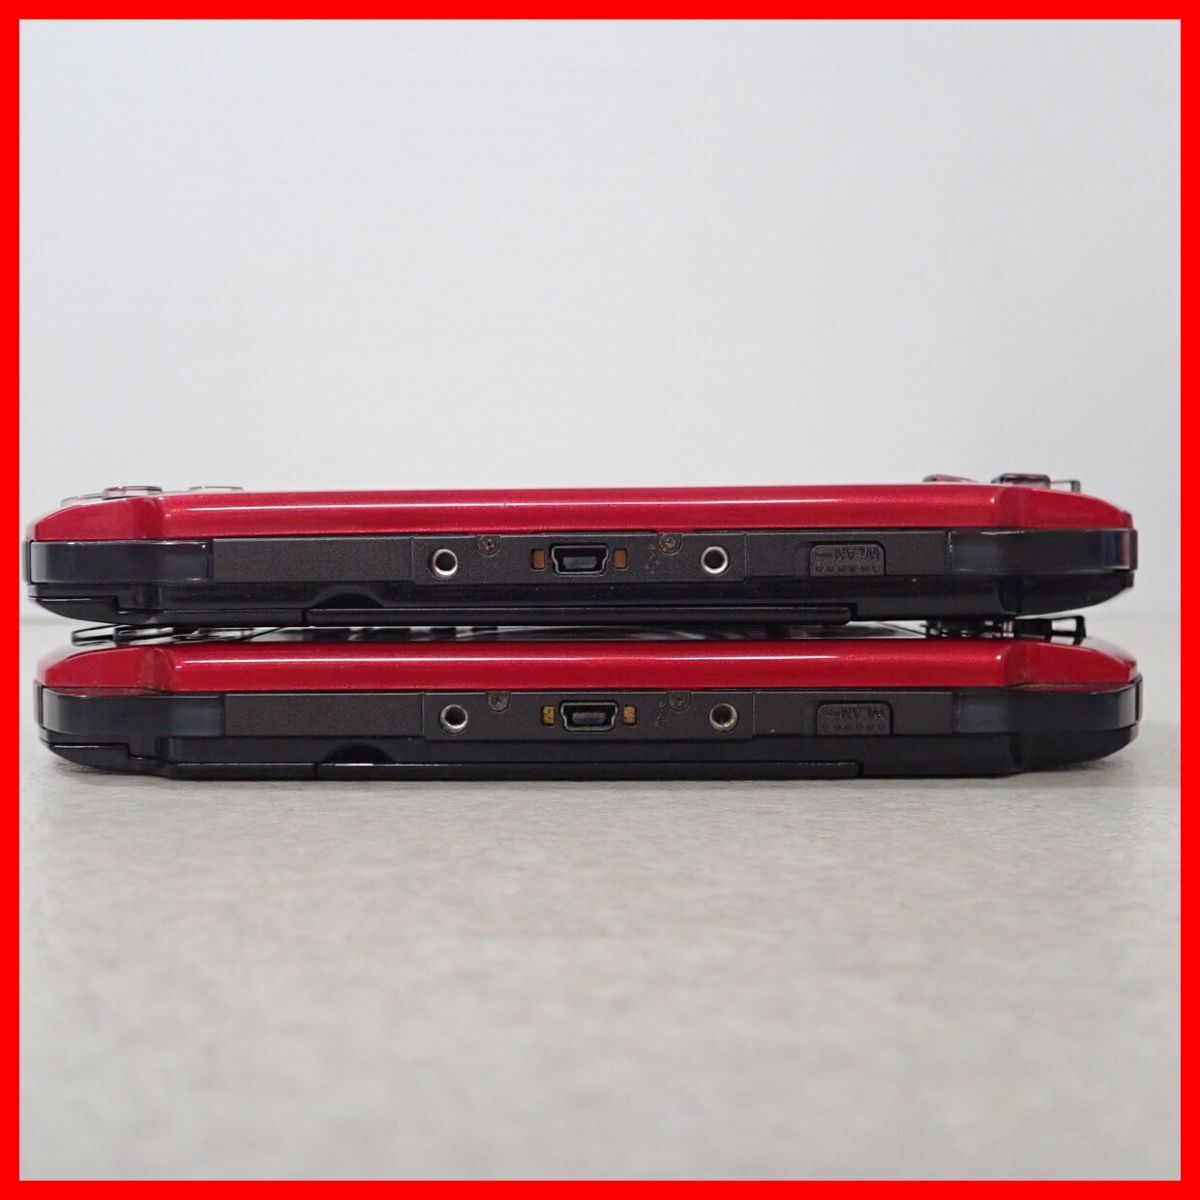 PSP PlayStation * портативный корпус PSP-3000 красный / черный VALUE PACK совместно 2 шт. комплект SONY коробка мнение есть первый период . settled Junk [20